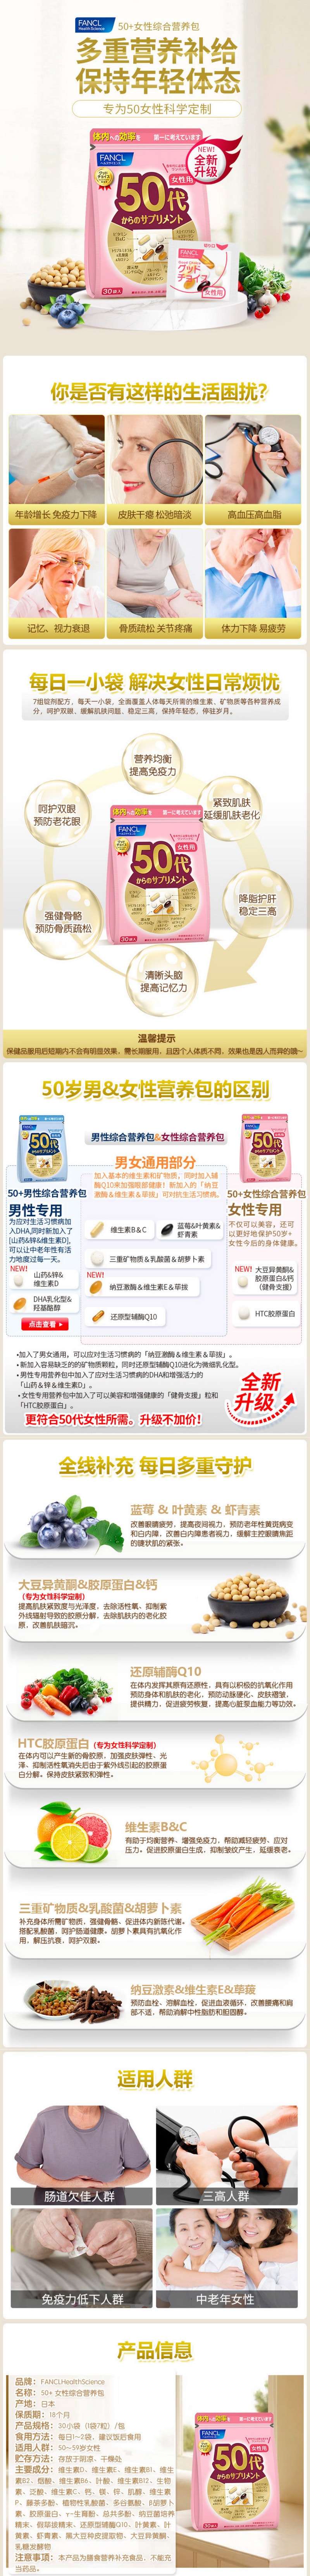 【日本直效郵件】FANCL維生素 女性八合一維生素營養素30日份 50代